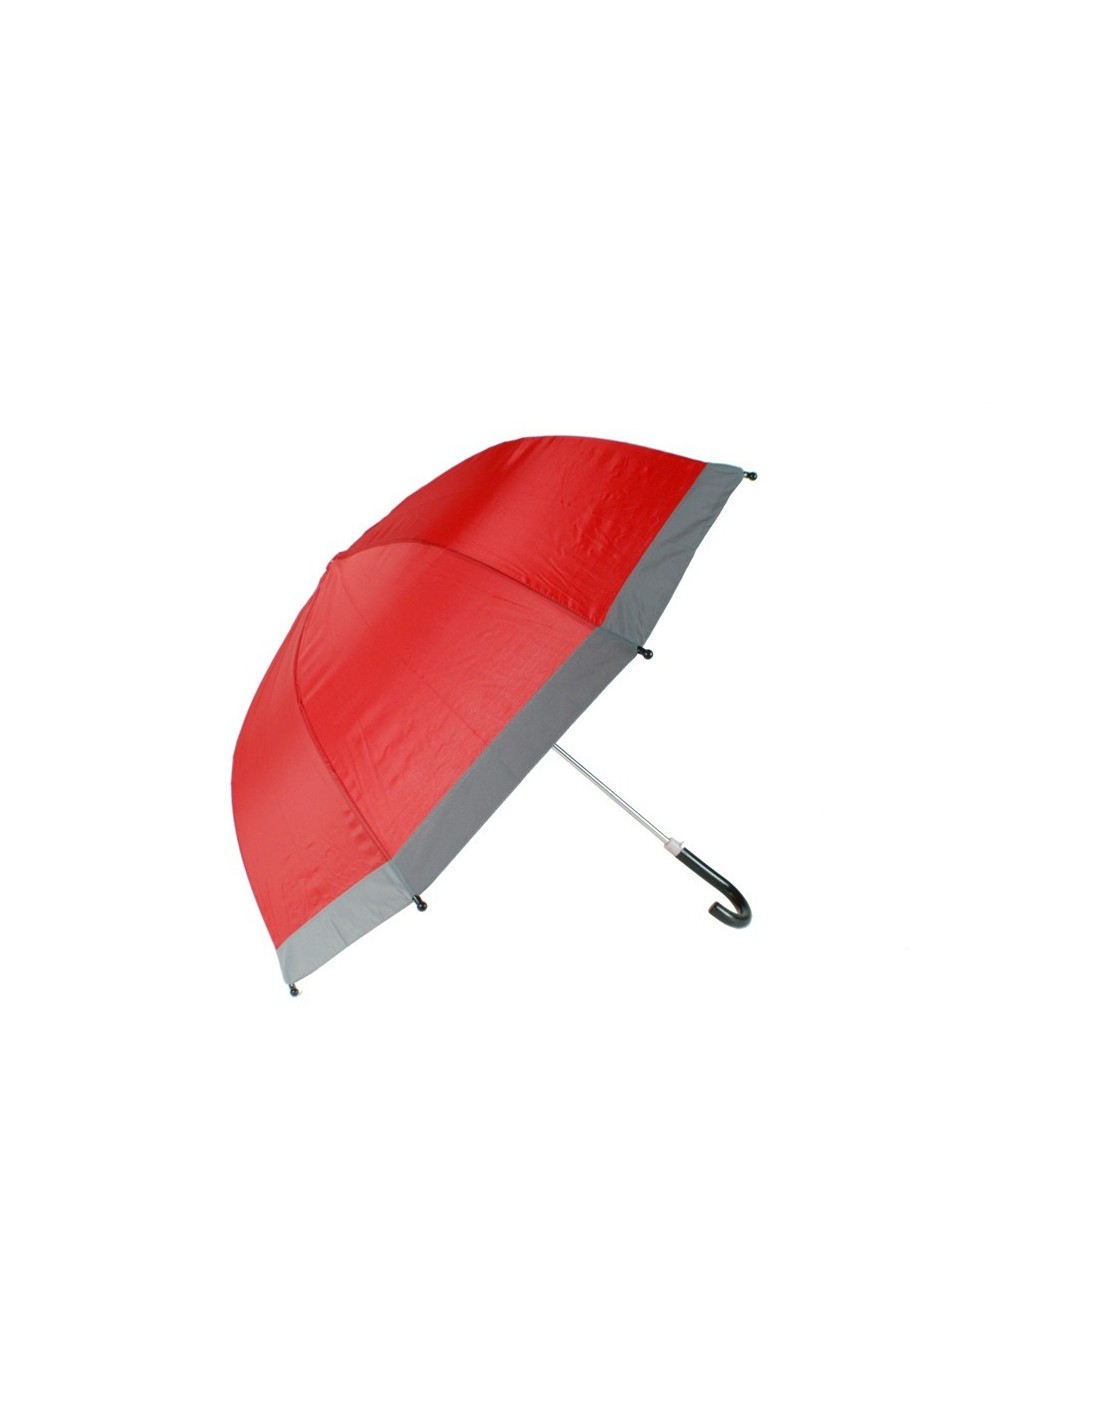 Paraguas infantil color rojo para niños con borde reflector para ser visibles en la oscuridad Regalo de cumpleaños aniversario